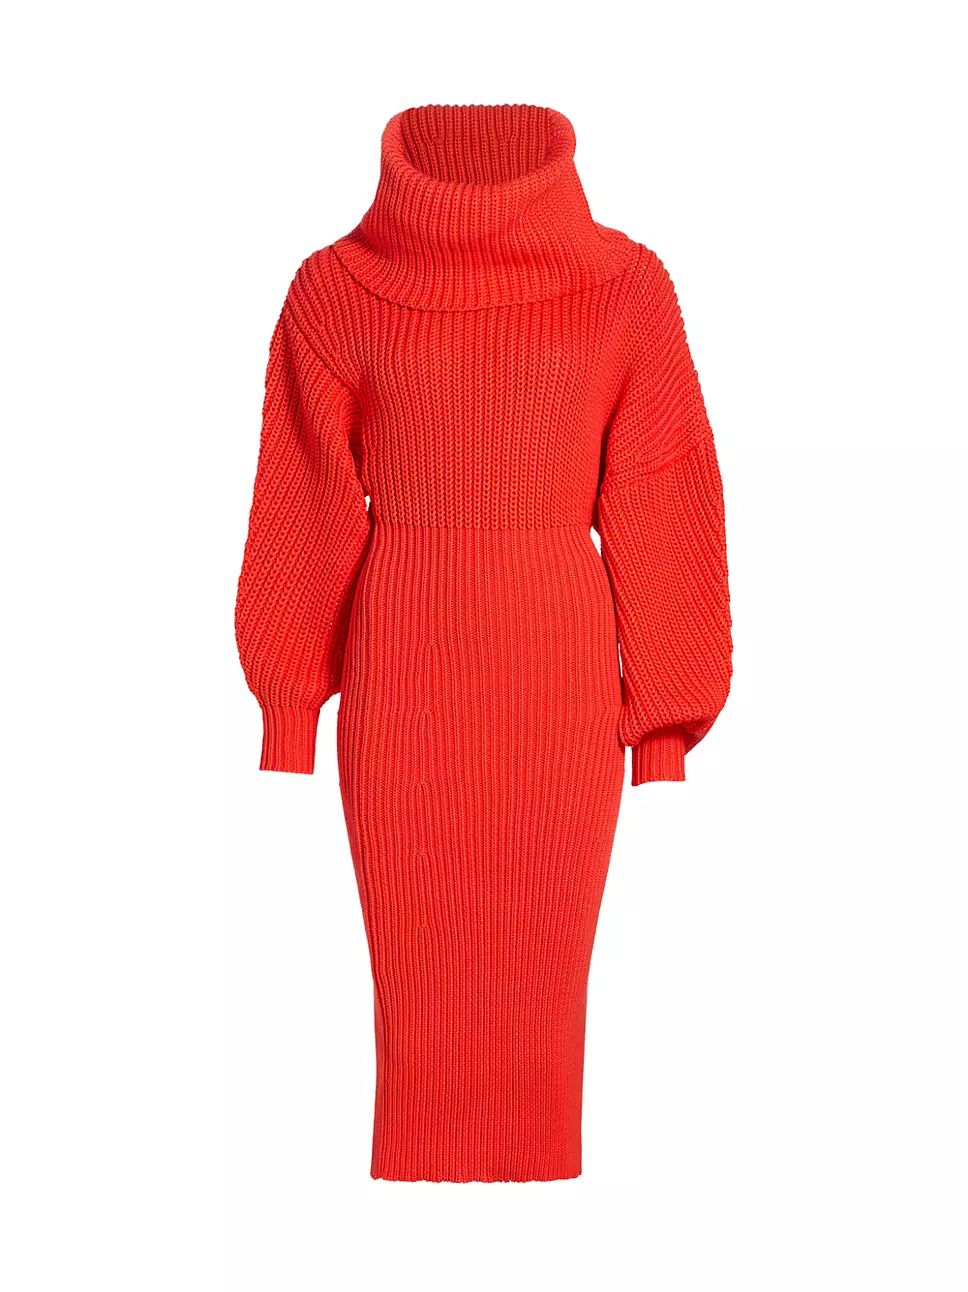 A.W.A.K.E. Mode Chunky Knit Snood Sweaterdress | Saks Fifth Avenue